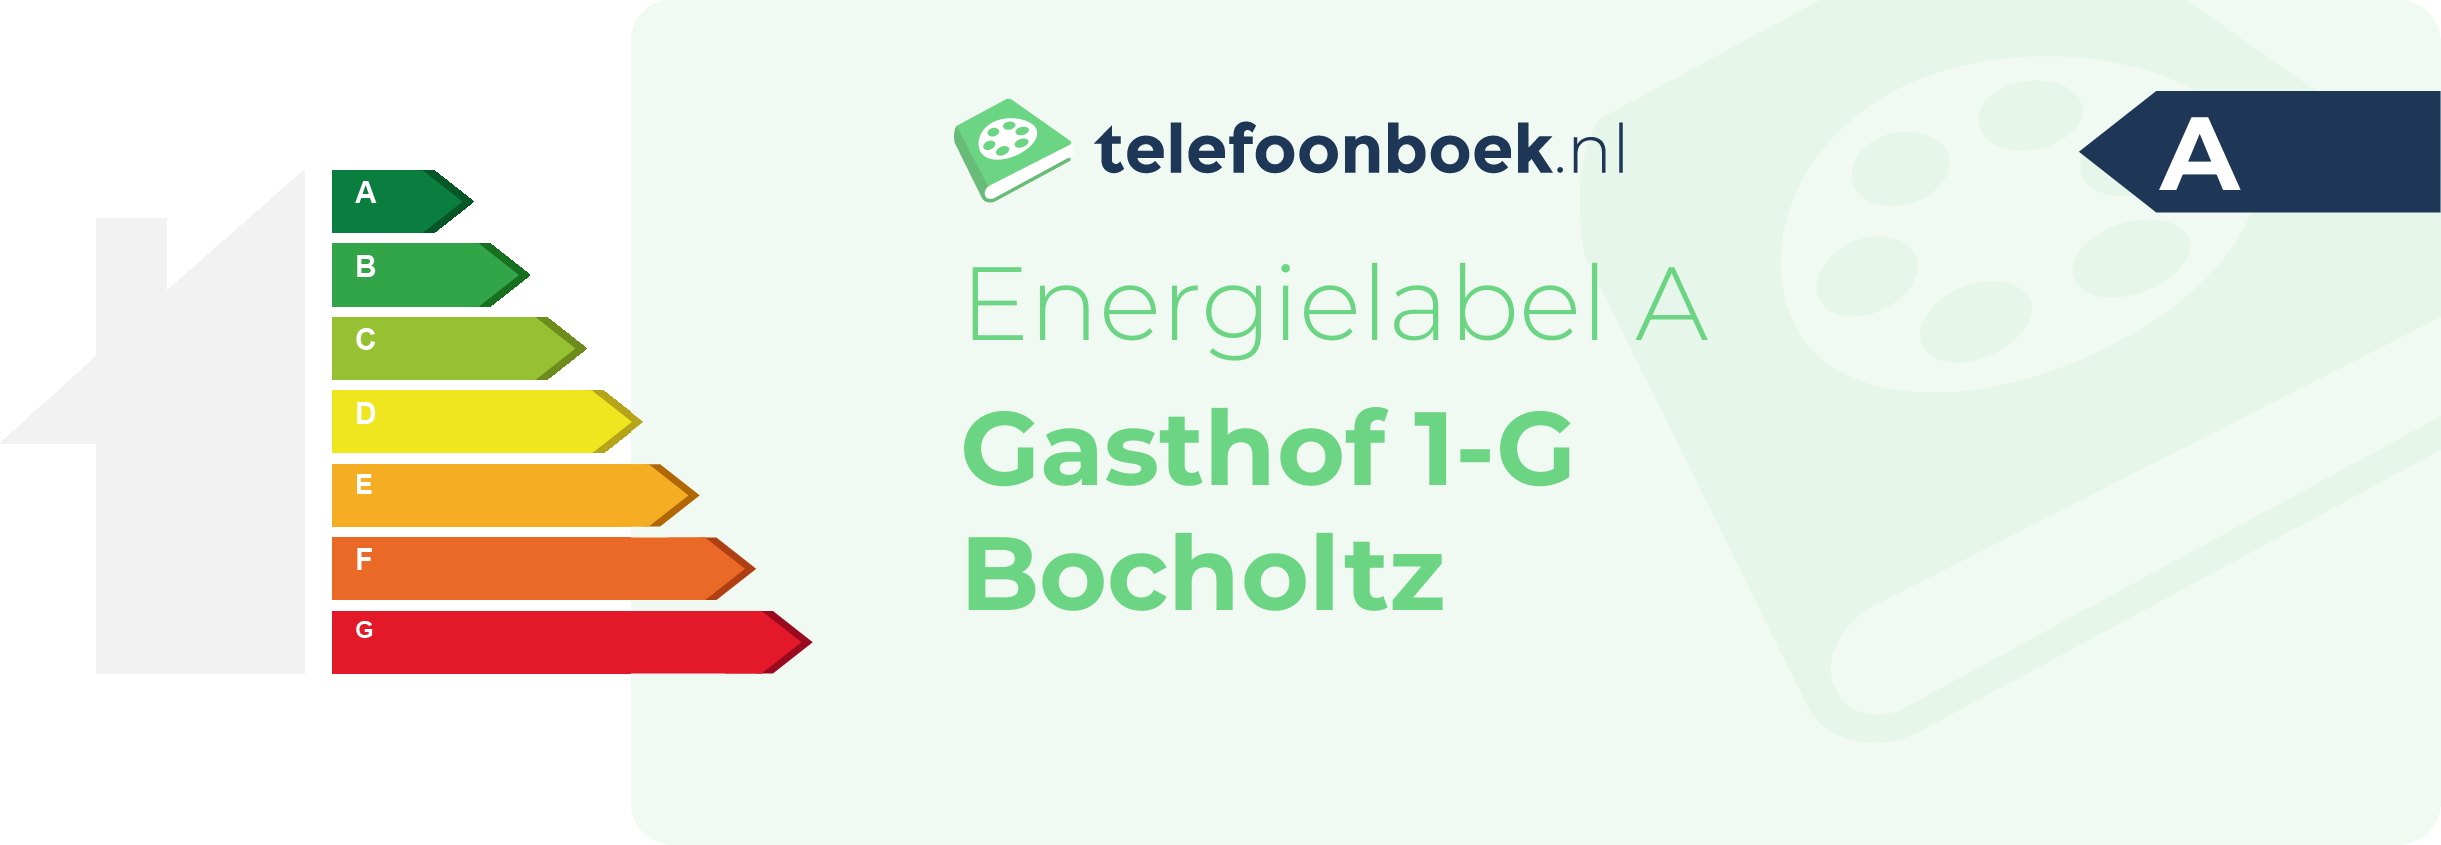 Energielabel Gasthof 1-G Bocholtz